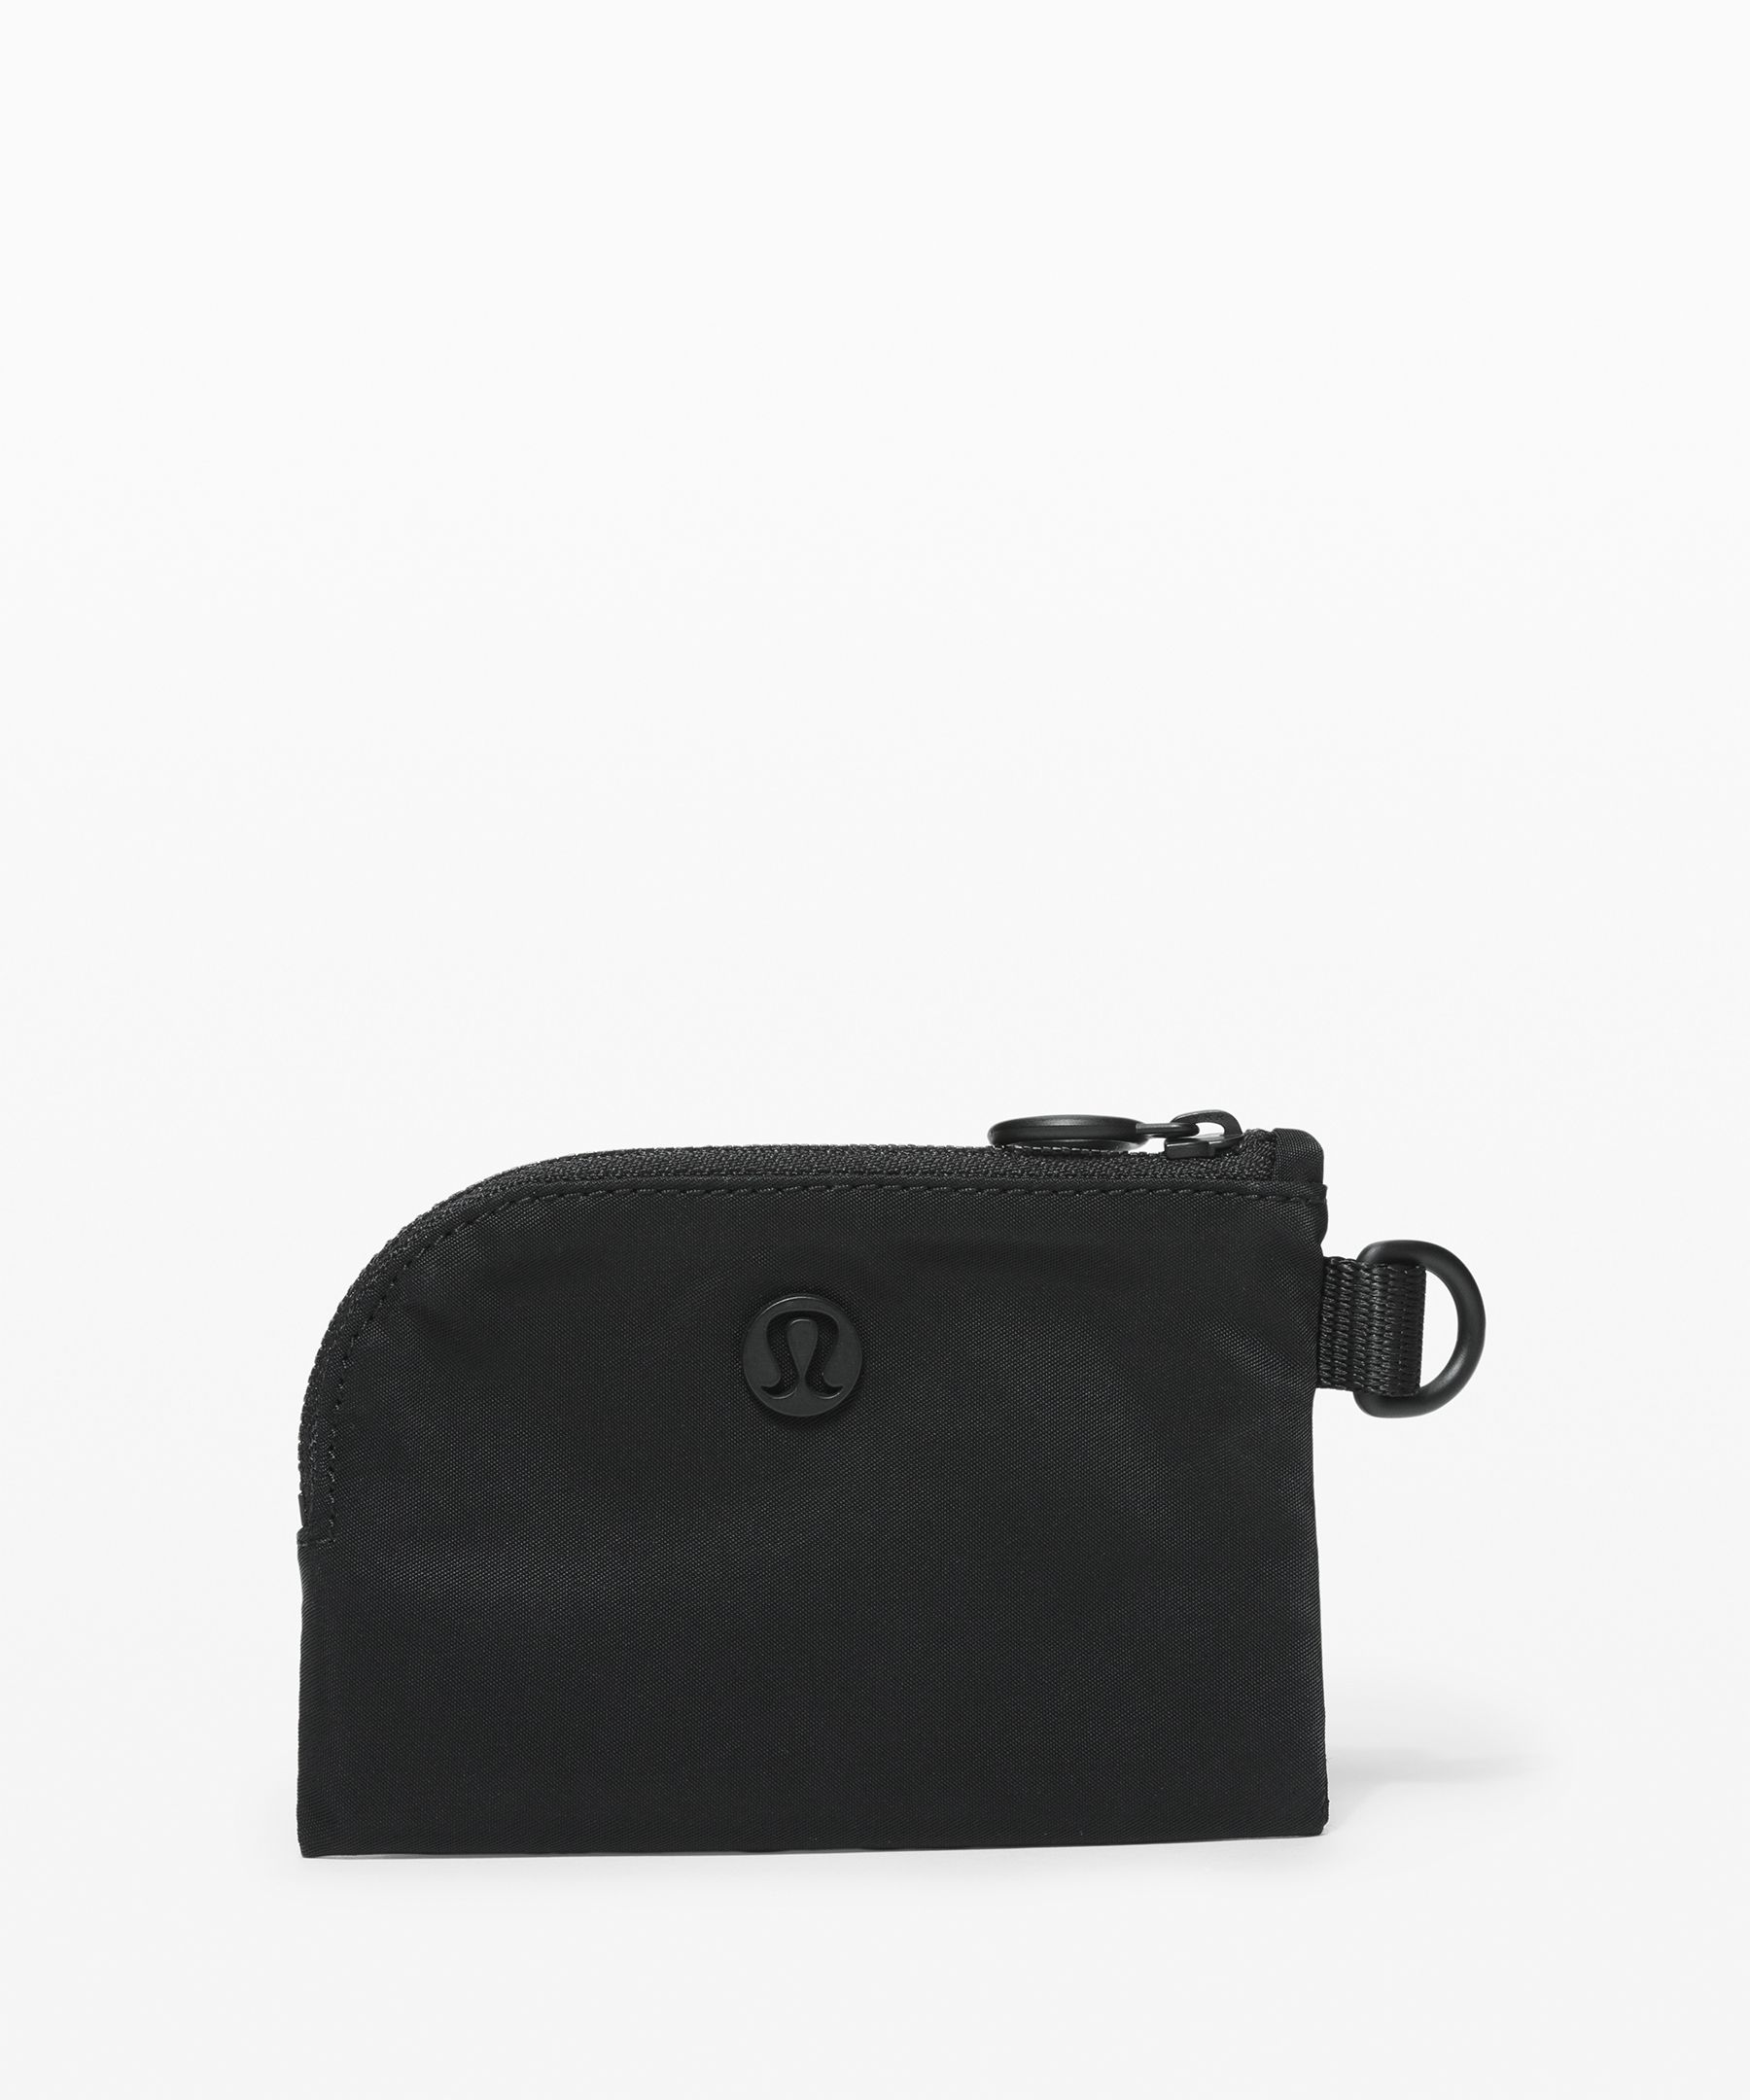 lululemon black purse